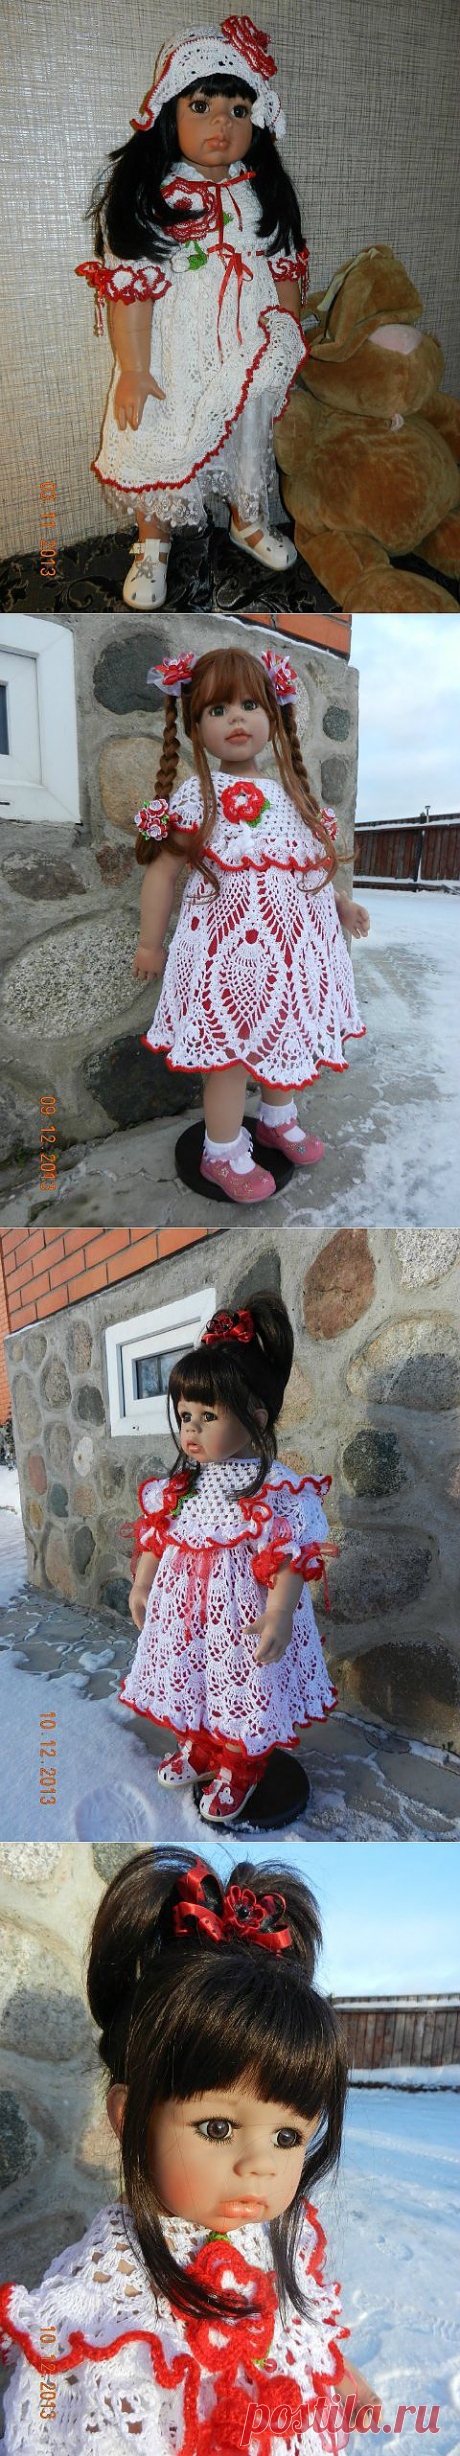 Девочки в красном! / Одежда и обувь для кукол - своими руками и не только / Бэйбики. Куклы фото. Одежда для кукол